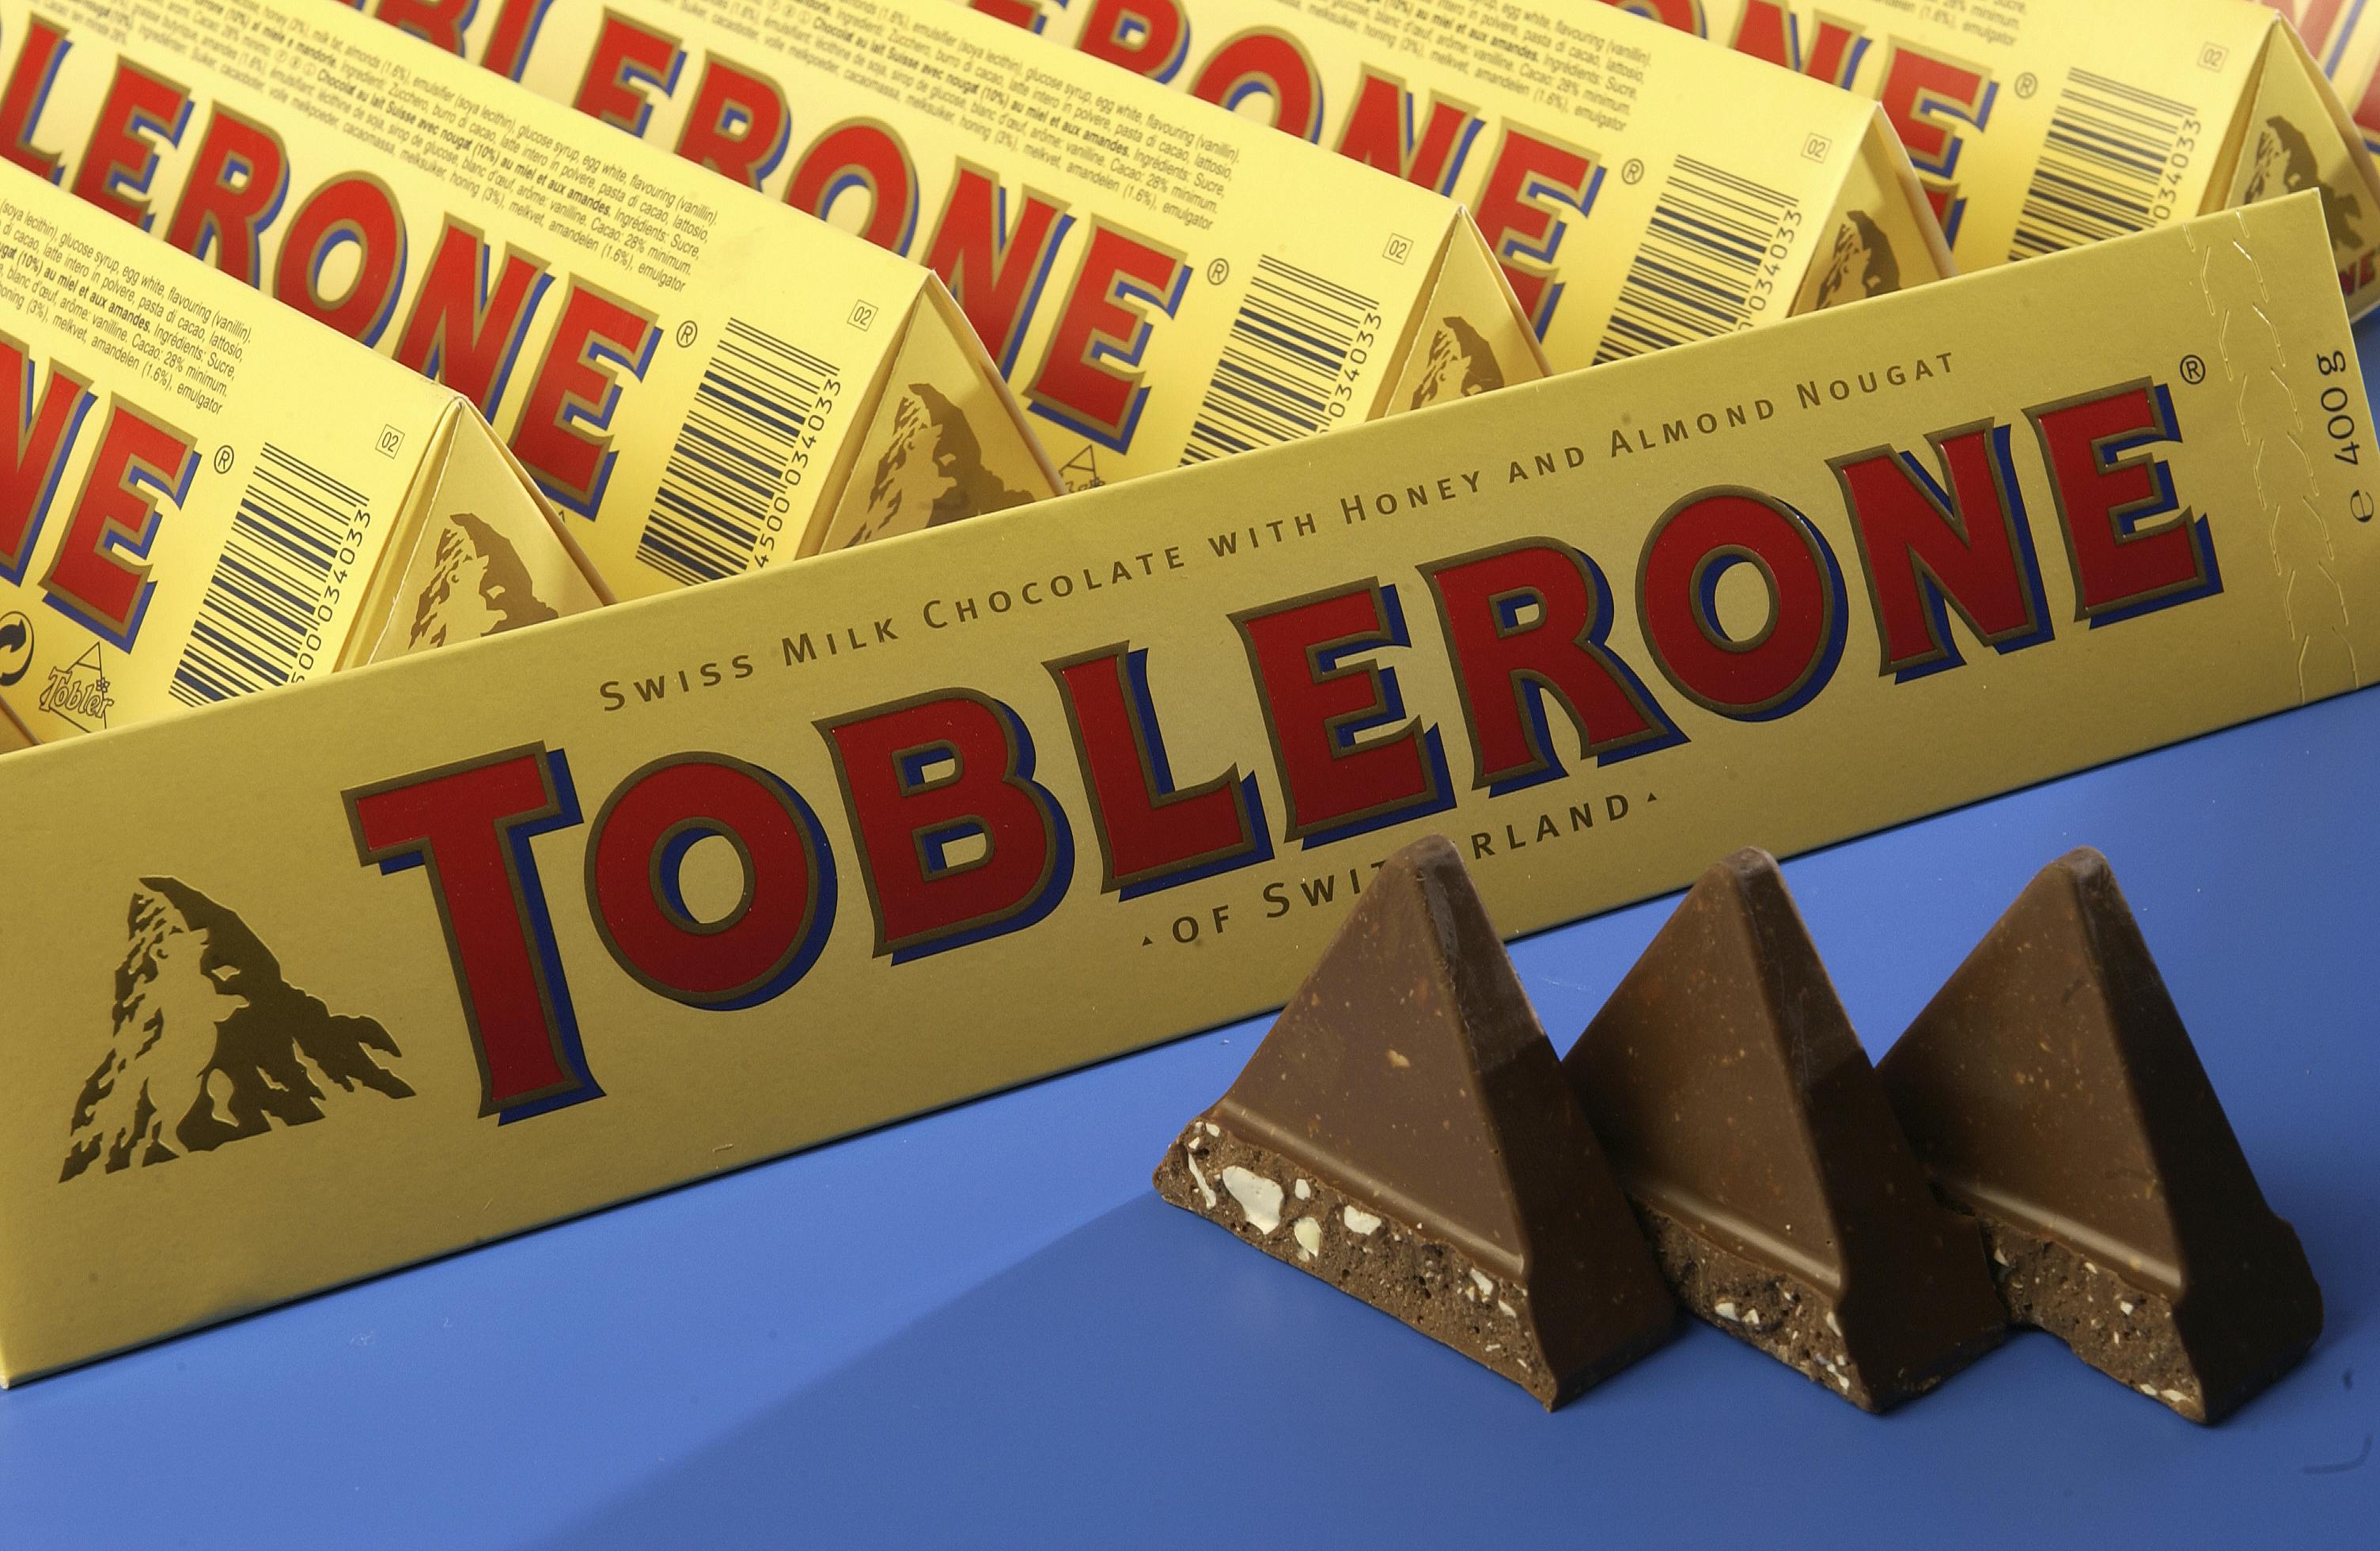 Toblerone - som de fleste kender fra tax free-butikker i hele verden -&nbsp; tvinges til snart at droppe deres åbenlyse schweiziske markedsføring på emballagen&nbsp;